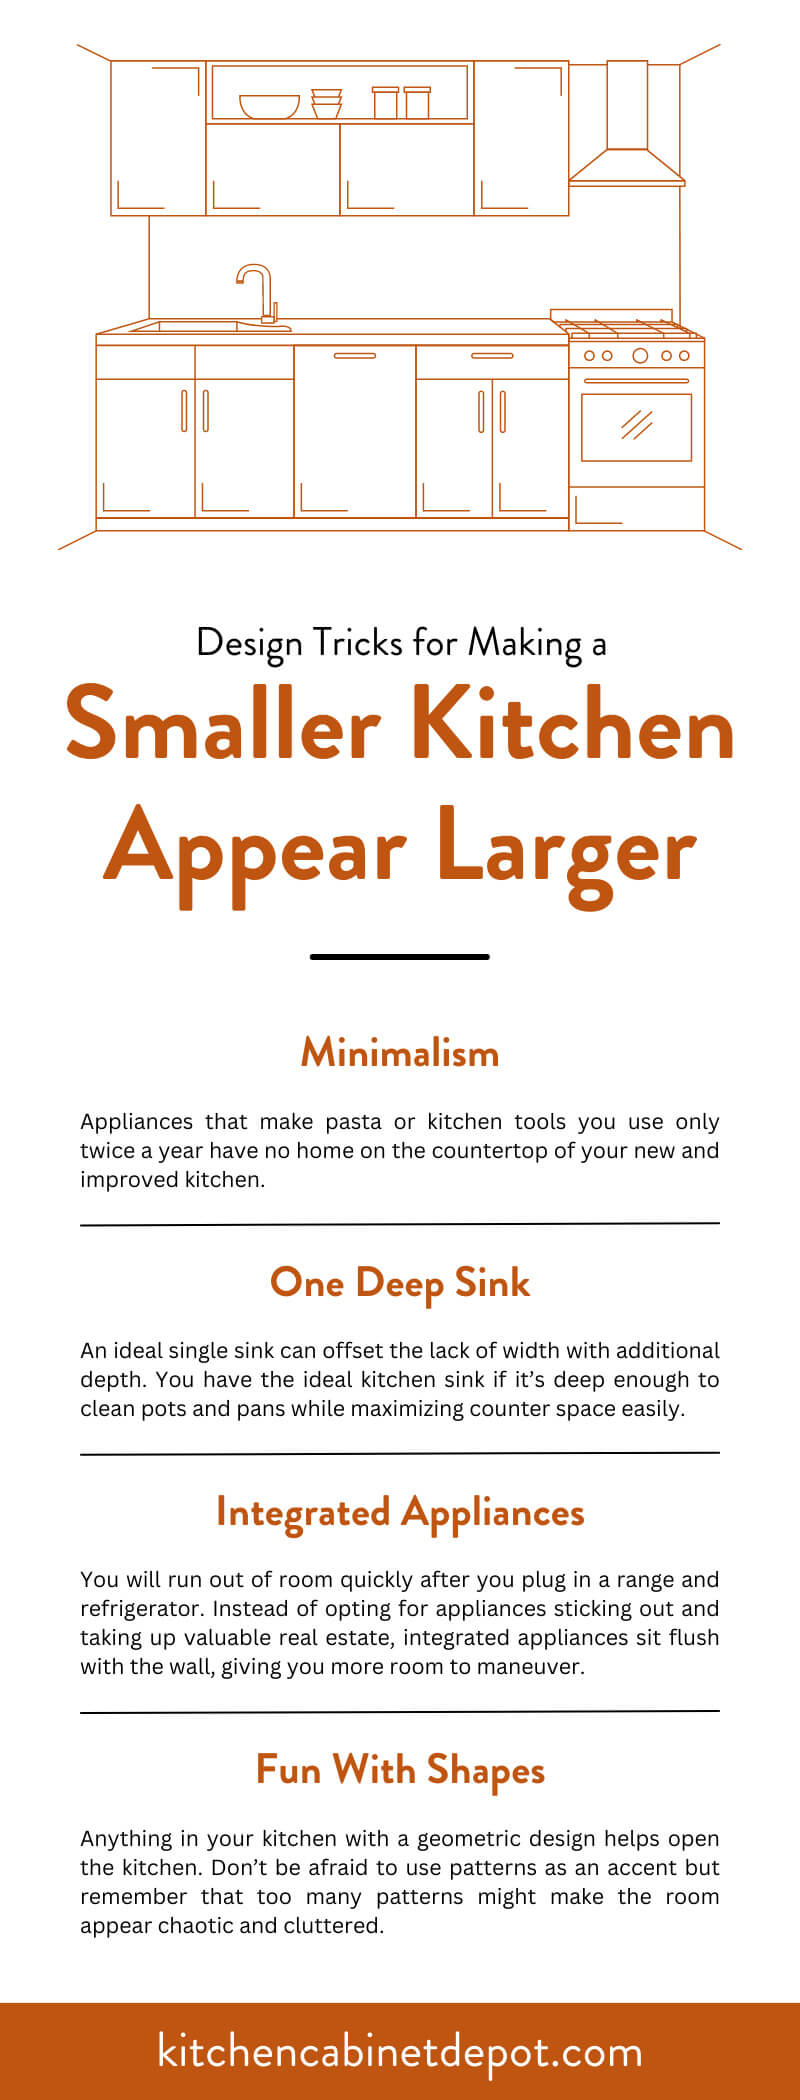 Design tricks for making a smaller kitchen appear larger